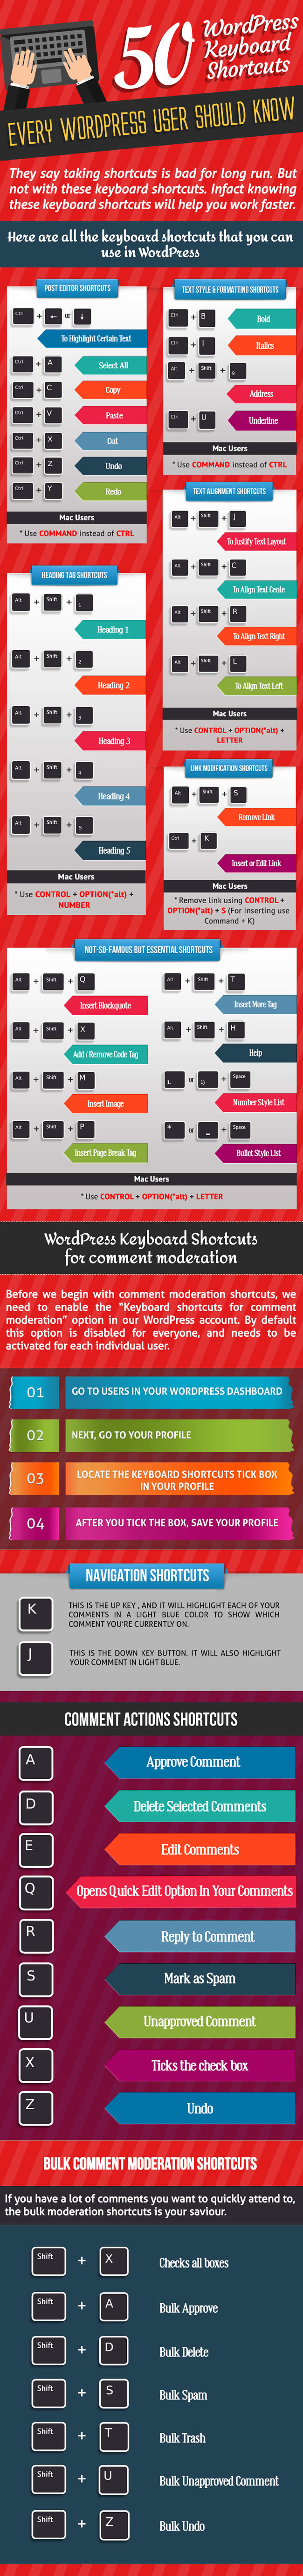 50 горячих клавиш, которые должен знать каждый пользователь WordPress